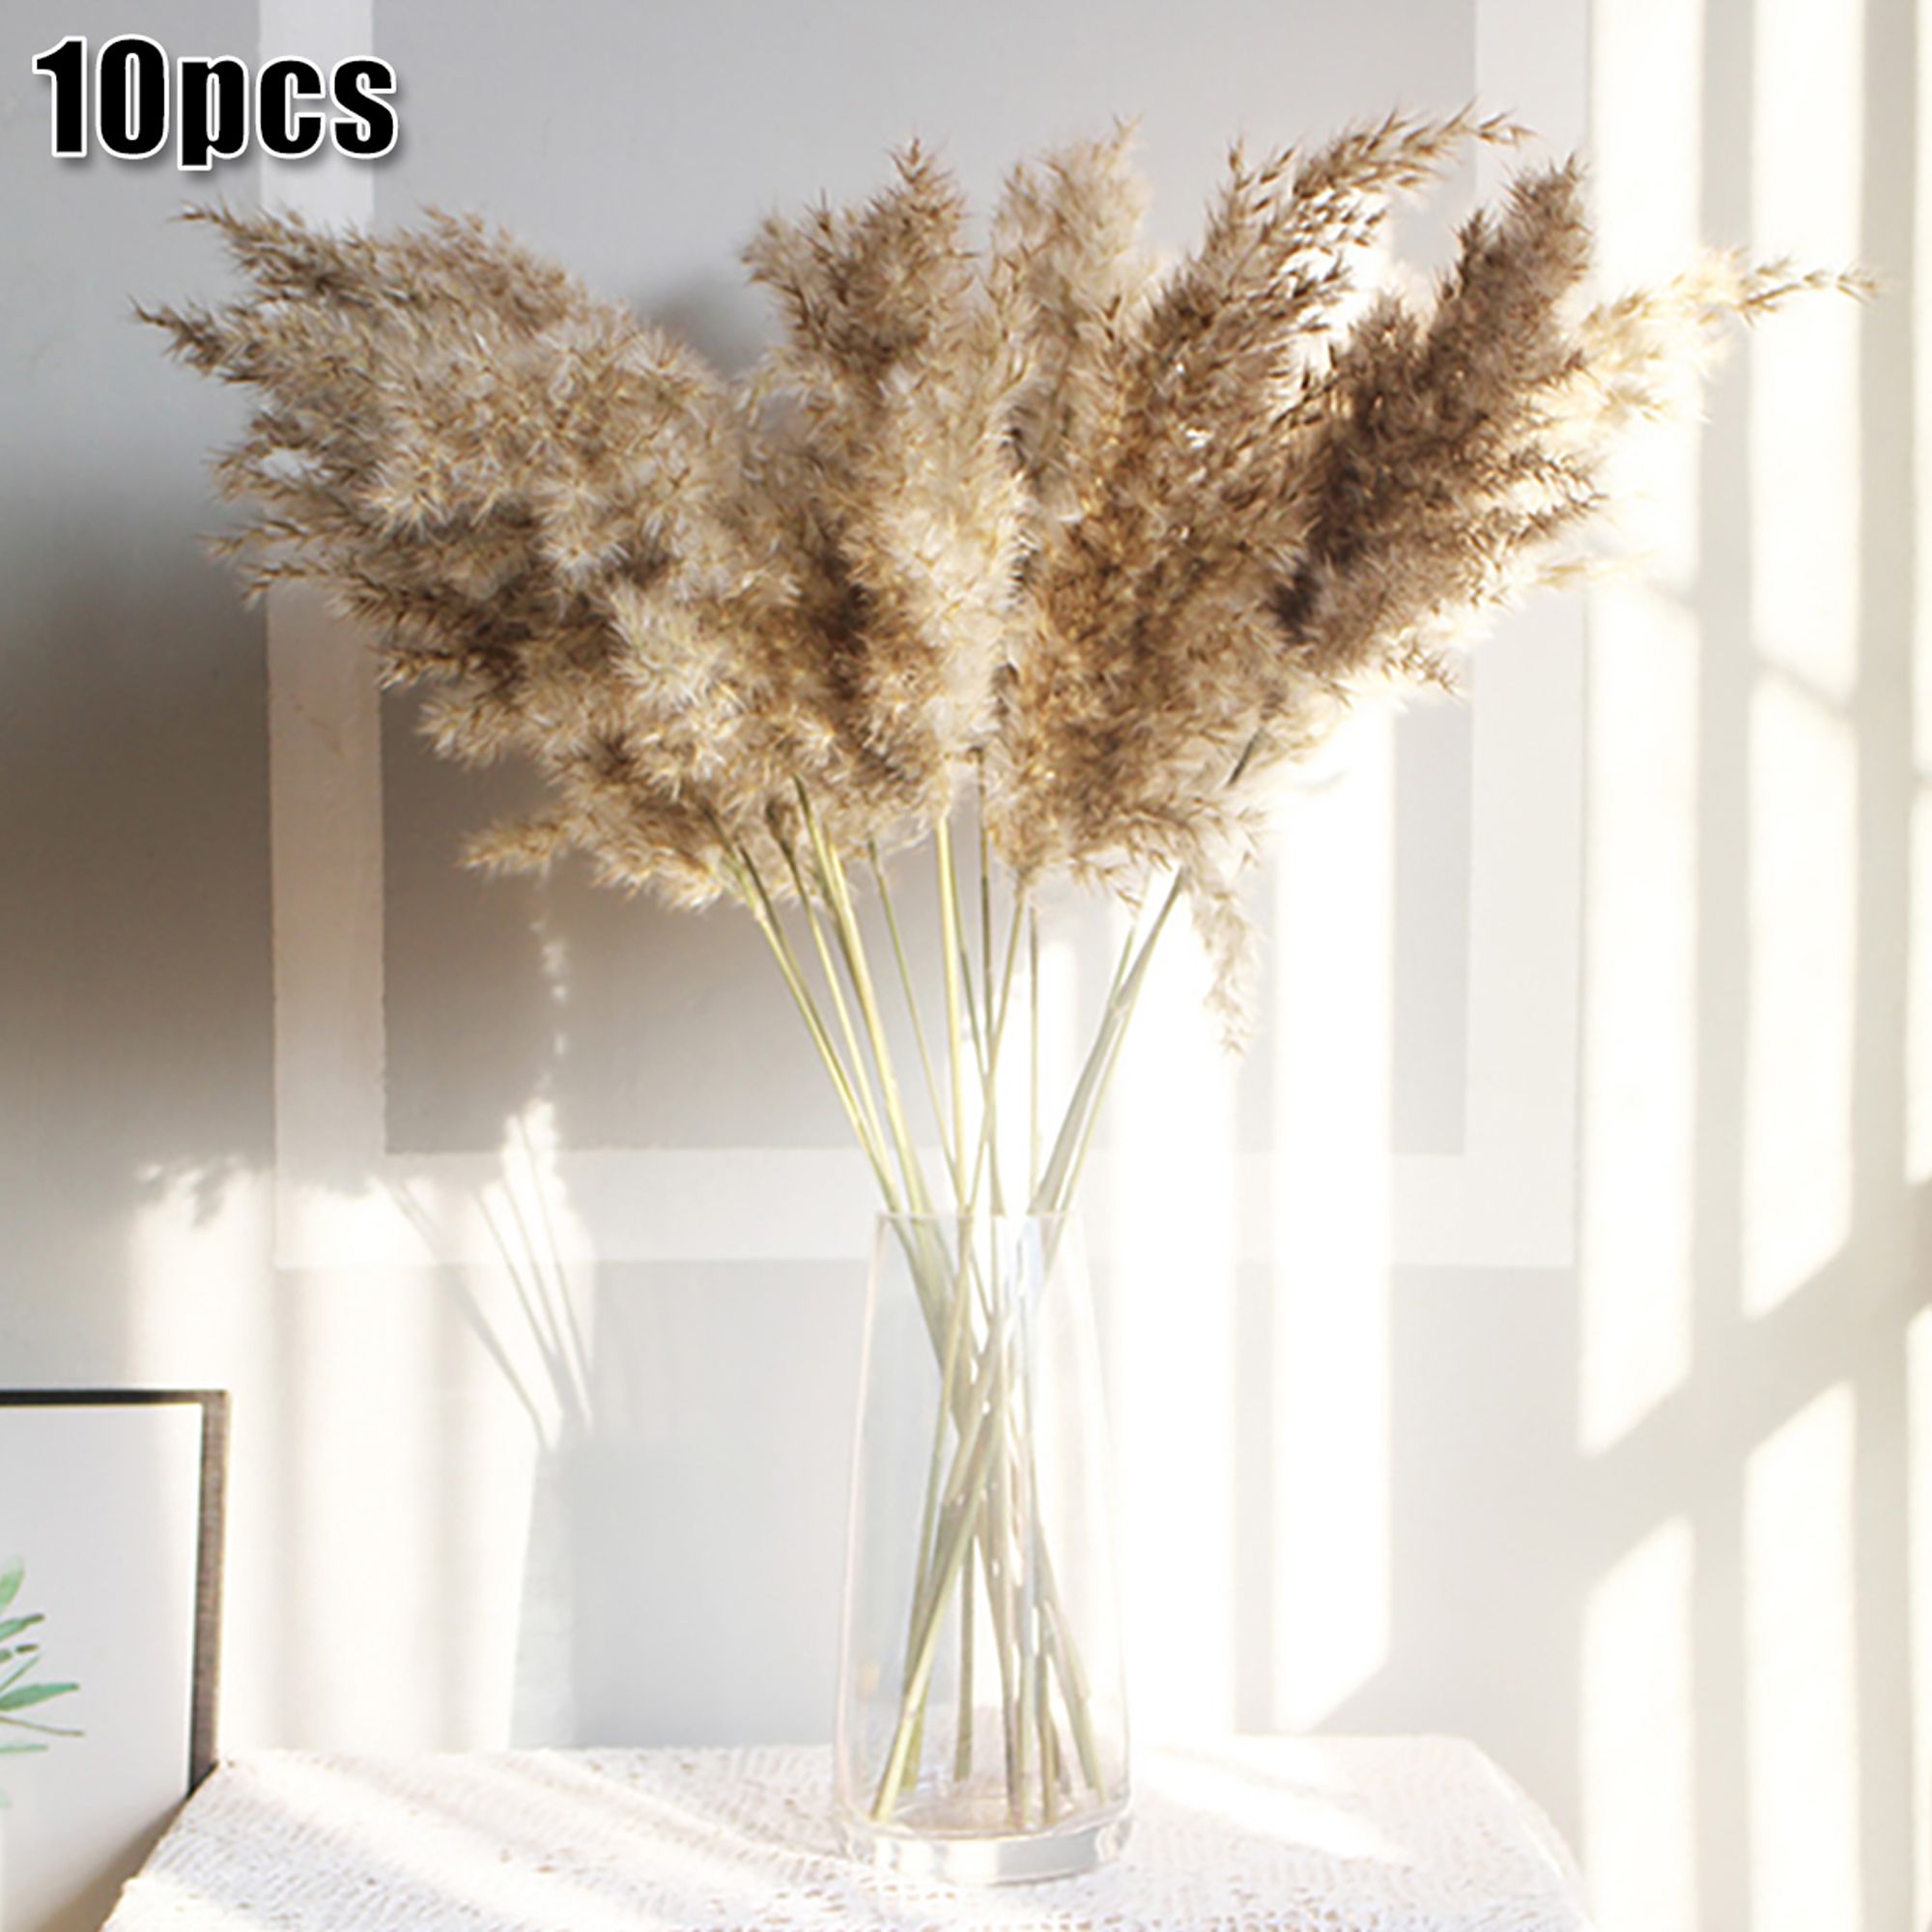 Natural Dried Pampas Grass Reed Flower Bunch Wedding Bouquet Home Decors 10 Pcs | Walmart (US)